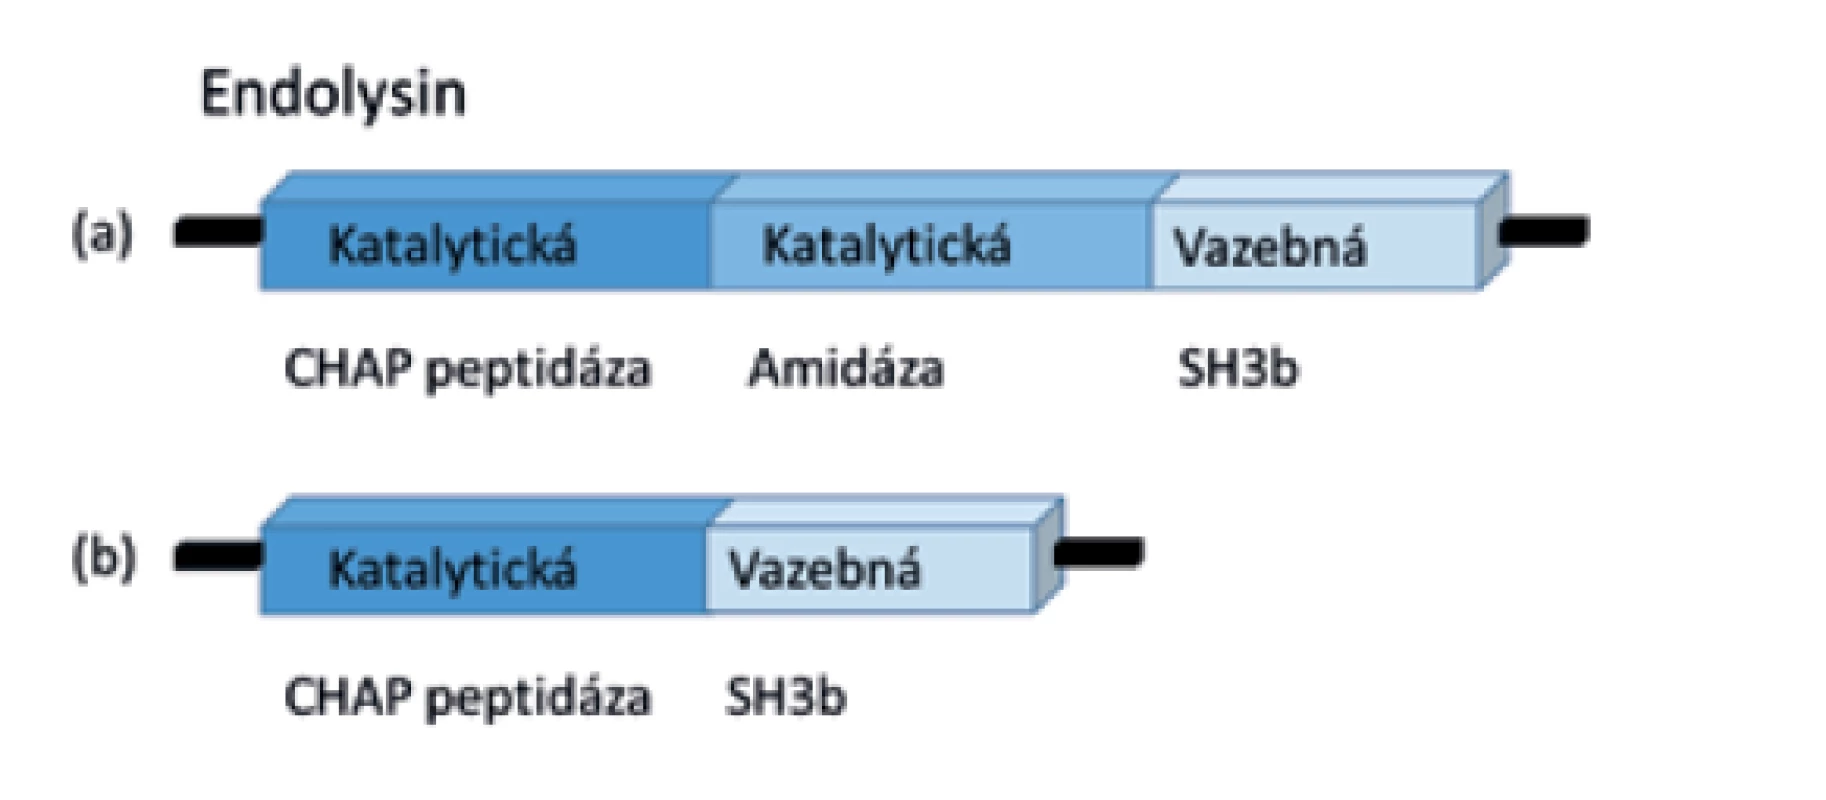 Doménová struktura enzybiotika endolysinu F812<br>
(LysK)<br>
a) Endolysin obsahuje doménu zodpovědnou za vazbu k substrátu
(SH3b) a dvě katalytické domény (peptidáza CHAP a amidáza)<br>
b) Enzymaticky aktivní mutantní forma F1 bez amidázové domény
(volně upraveno podle obrázku z článku Kashani et al., 2017 [48])<br>
Figure 4. Domain structure of the enzybiotic endolysin F812<br>
(LysK)<br>
(a) Endolysin carries a domain responsible for substrate binding
(SH3b) and two catalytic domains (peptidase CHAP and amidase)<br>
(b) Enzymatically active mutant F1 without amidase domain
(adapted based on the figure in Kashani et al., 2017 [48])